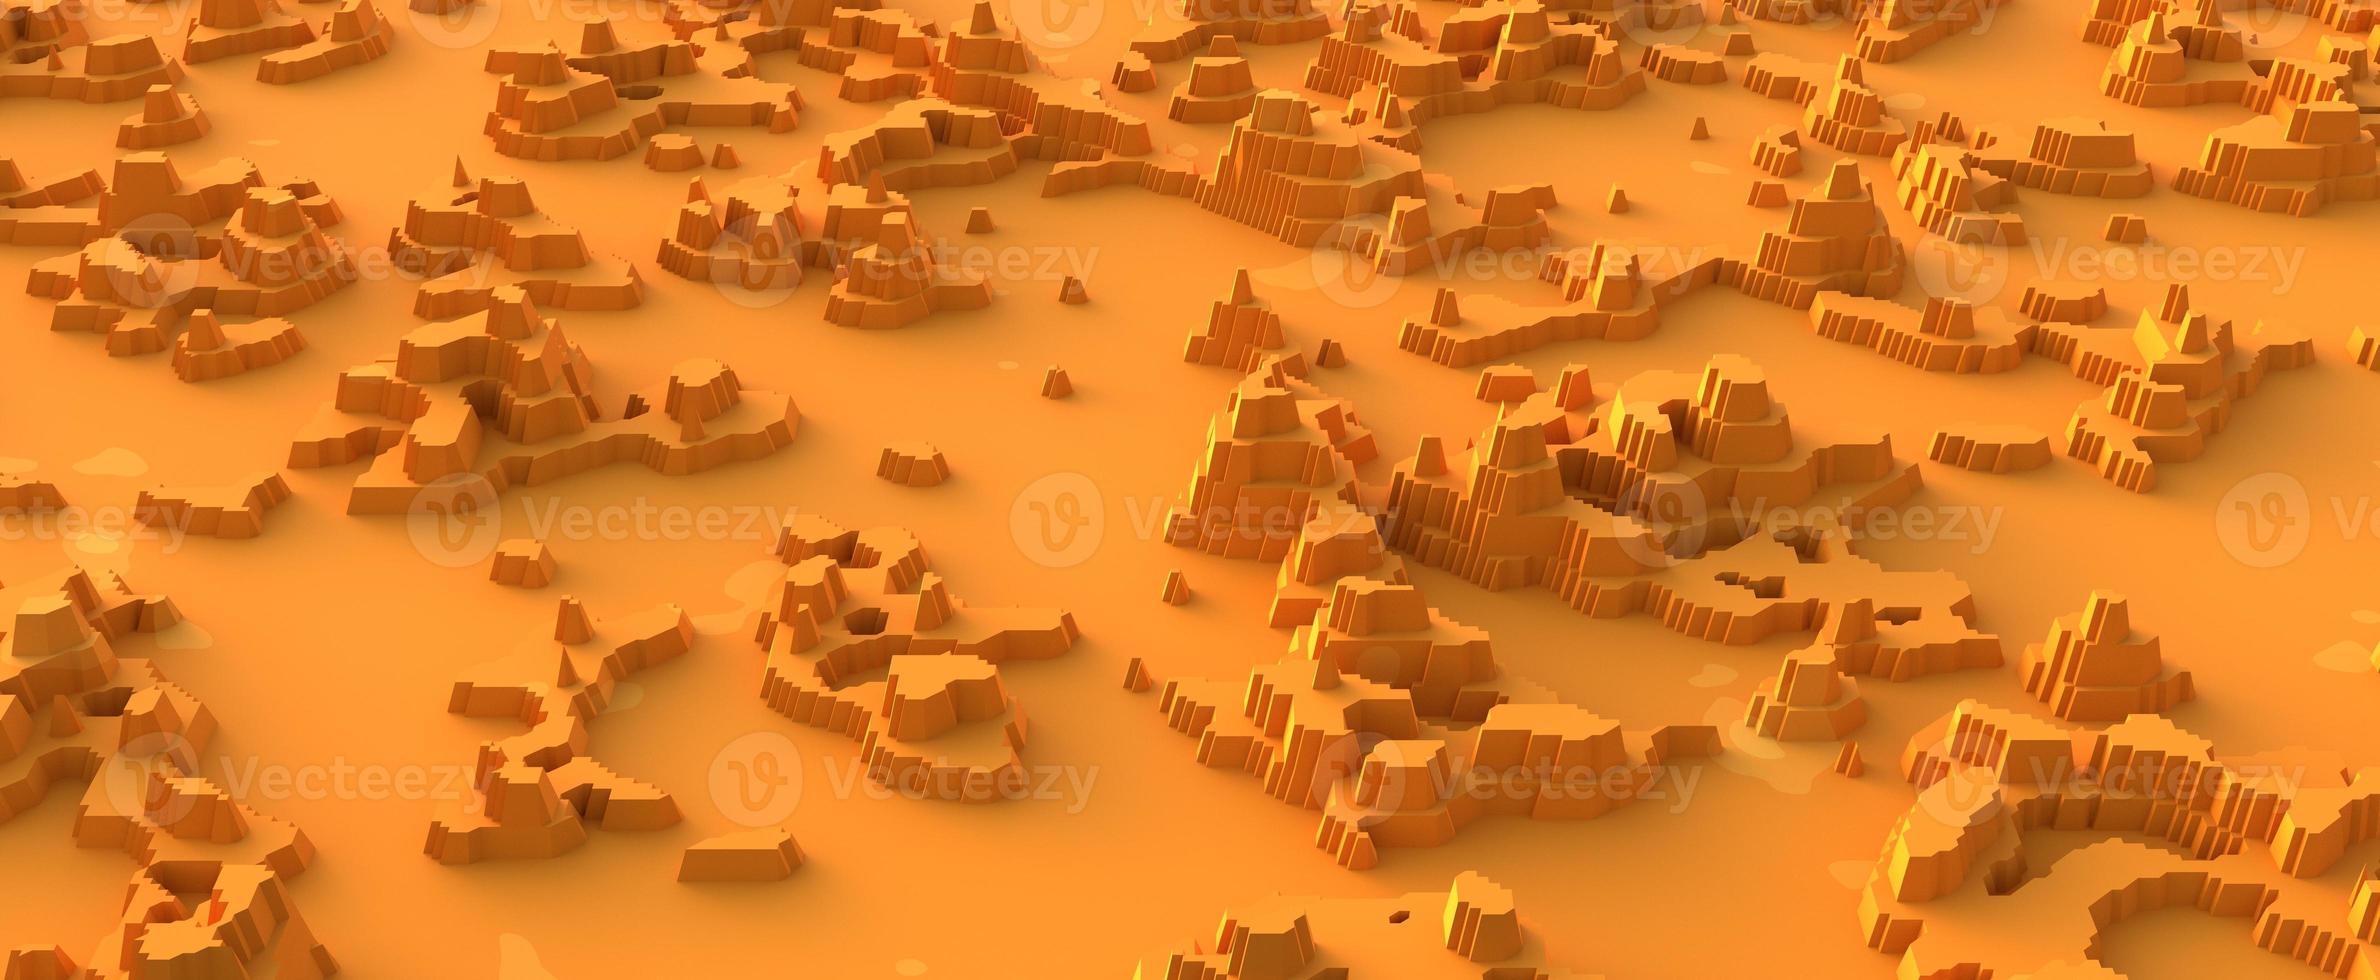 paysage de montagne désertique découpé dans du papier. surface de sable chaud jaune avec massifs de pierre de rendu 3d et oasis séchées. abstraction naturelle des canyons et des collines dispersées dans le désert photo